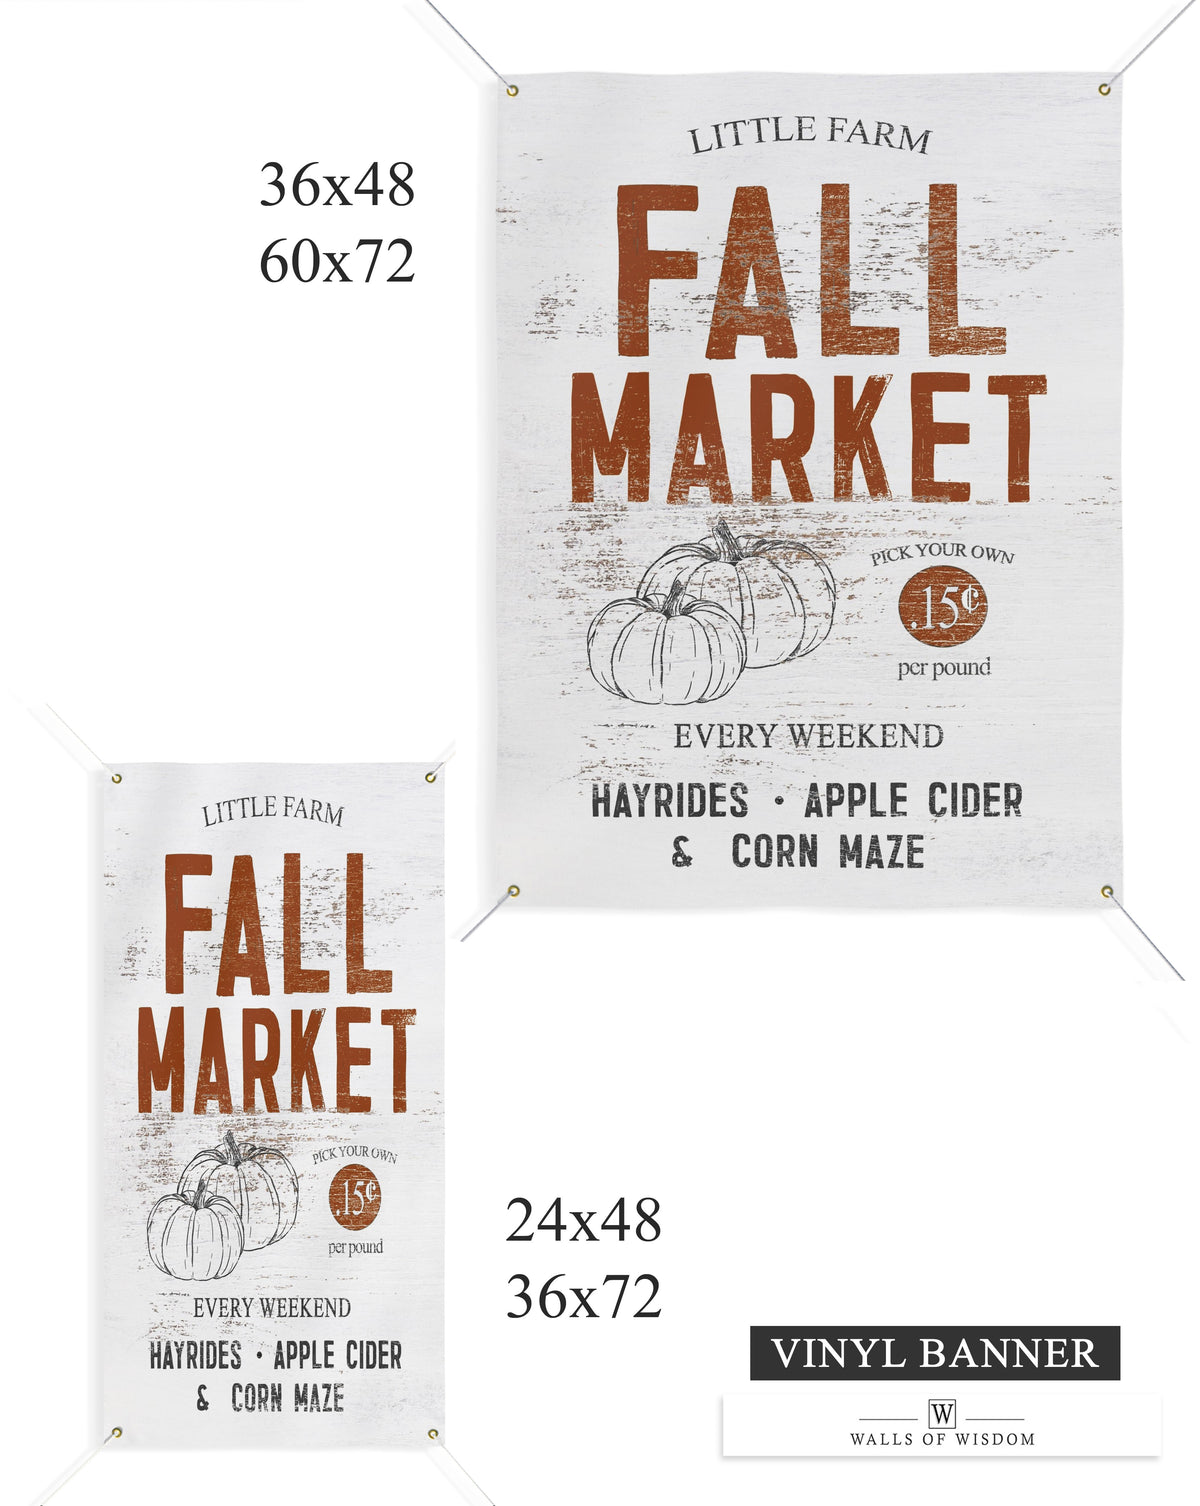 Fall Market Farmhouse Patio Decor - Outdoor Vinyl Banner Sign